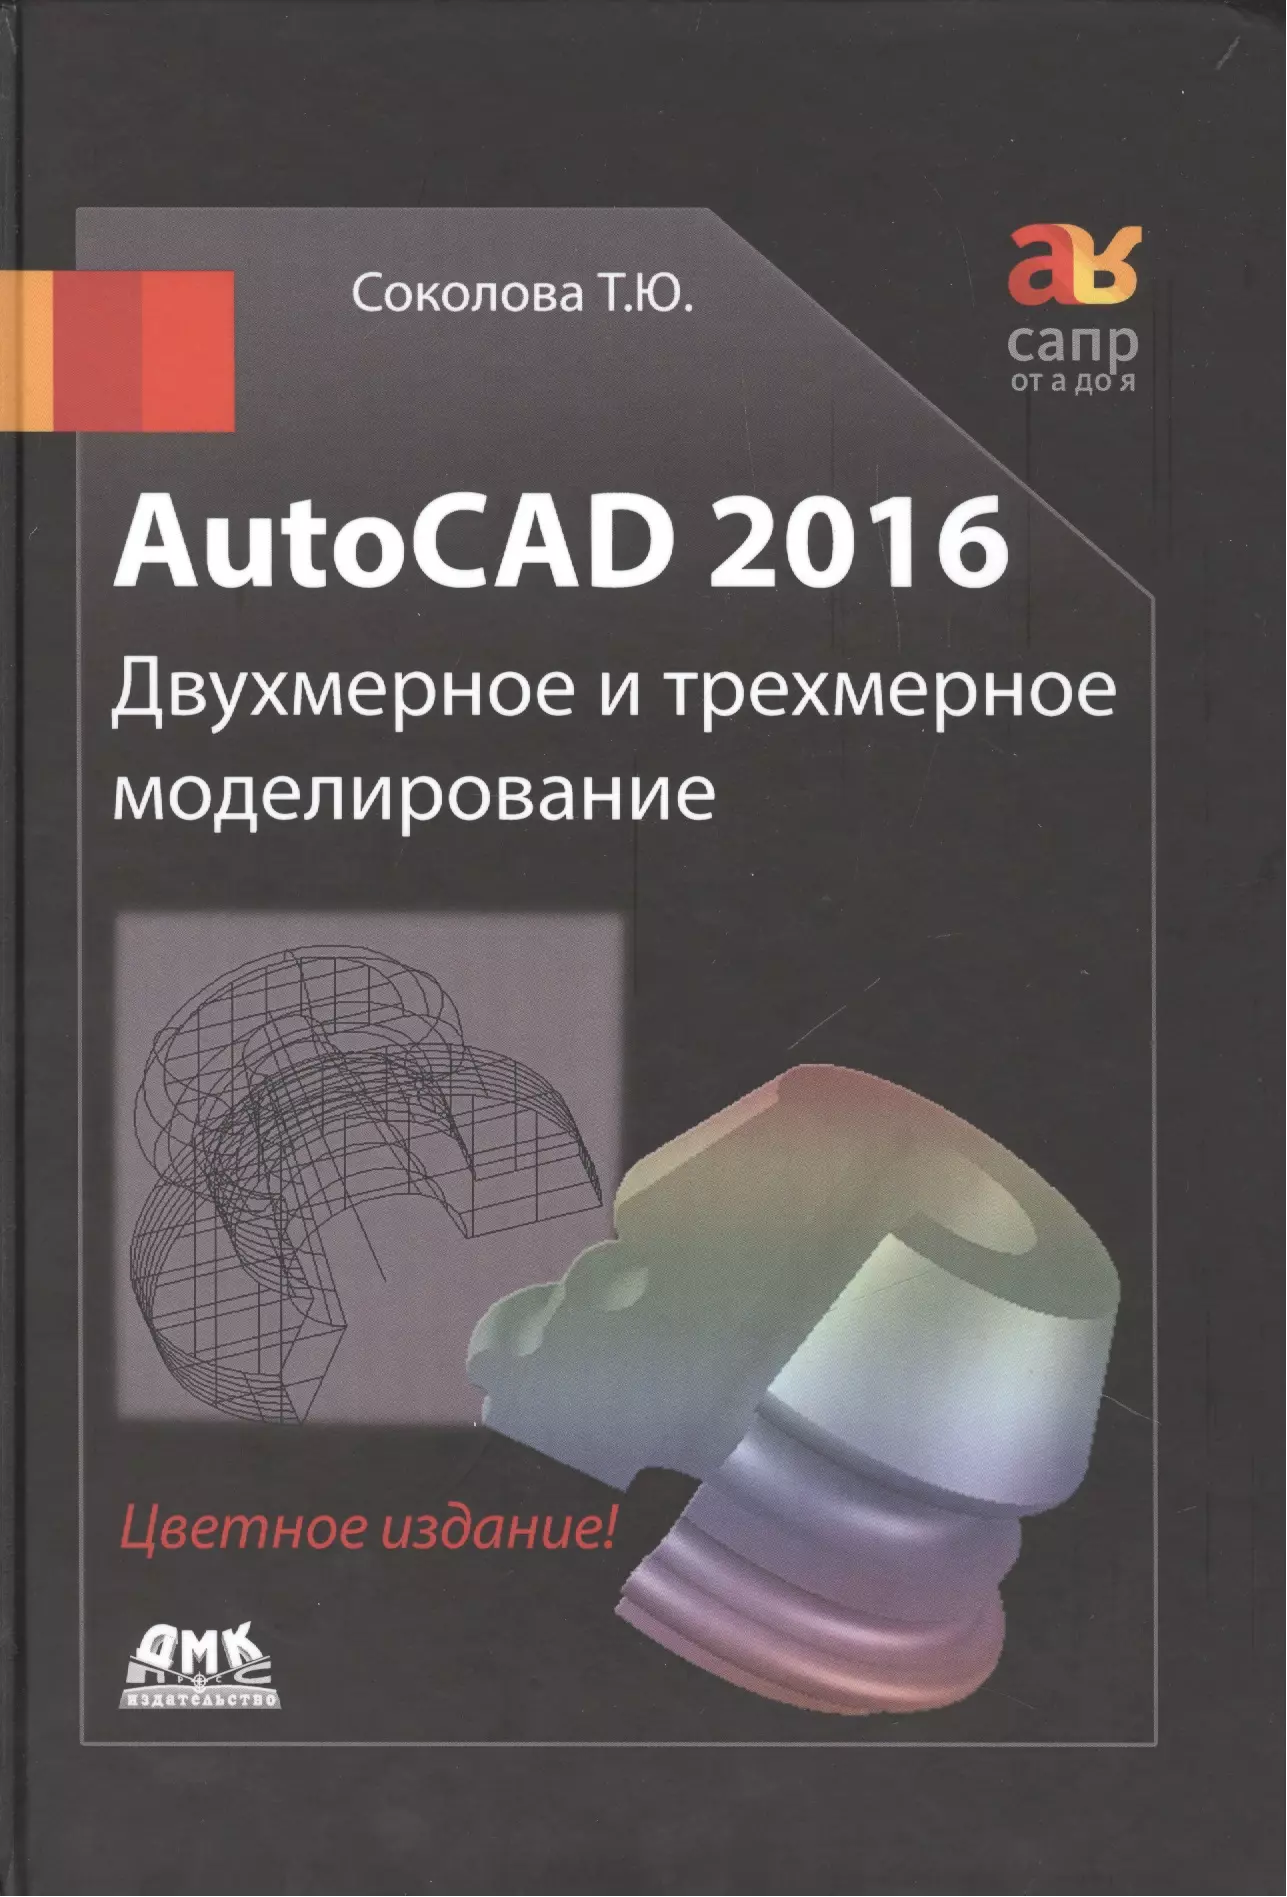 Соколова Татьяна Юрьевна - AutoCAD 2016  Двухмерное и трехмерное моделирование (цветное издание)